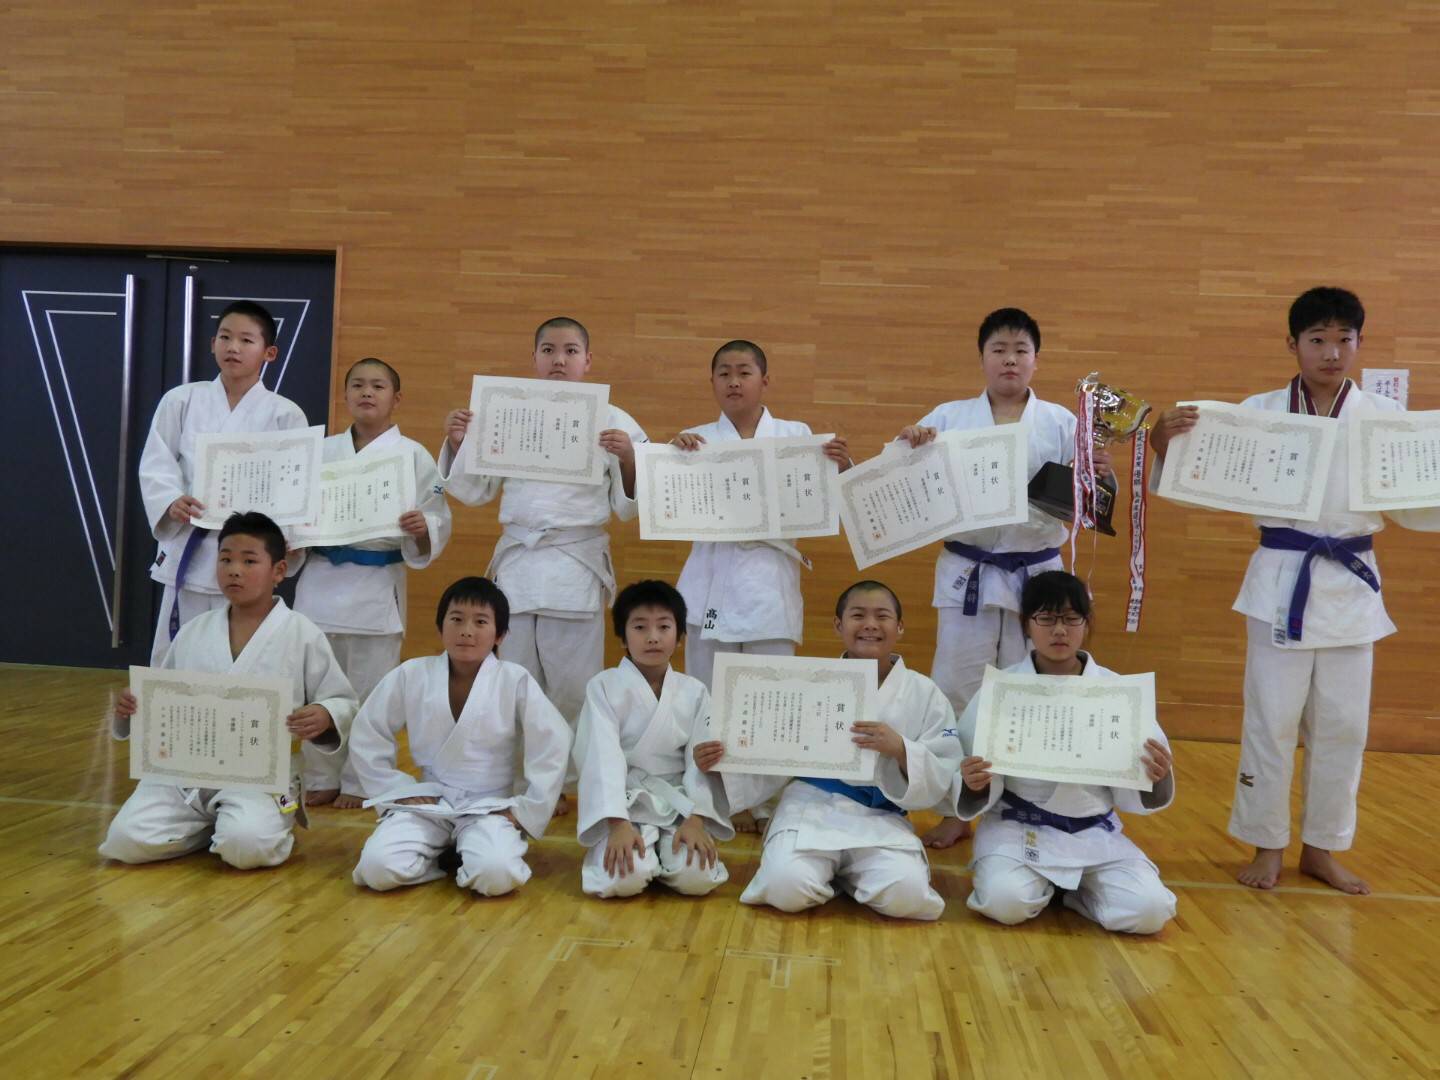 第6回県南少年柔道大会で横手柔道スポーツ少年団が団体戦優勝